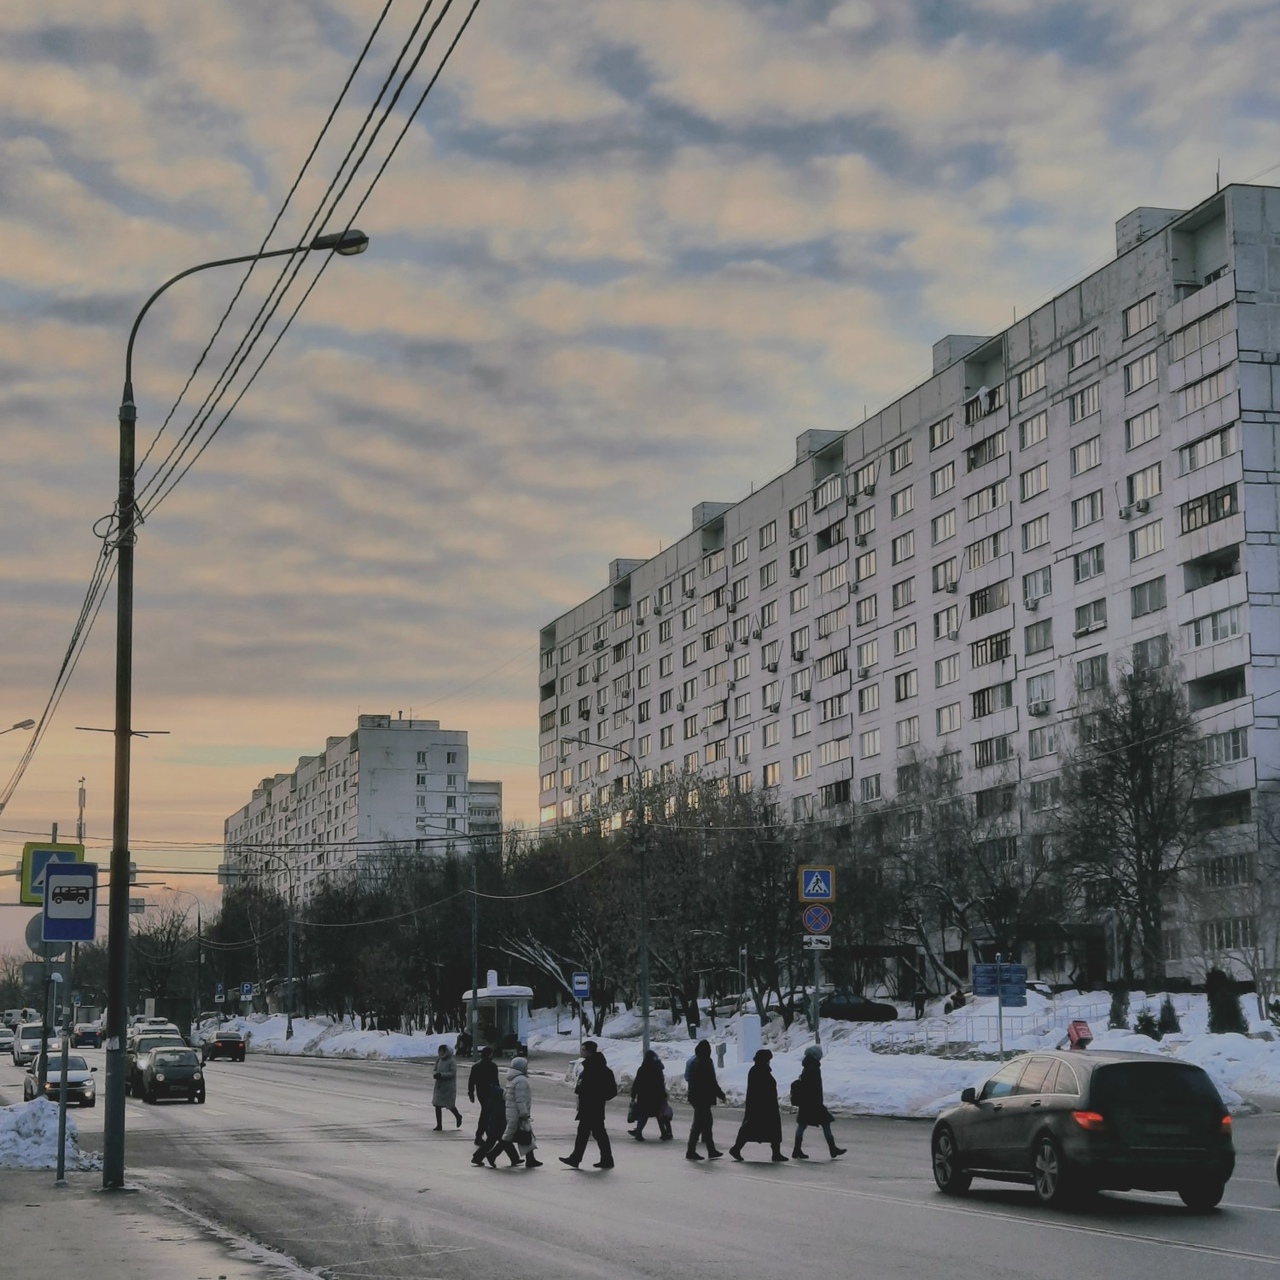 Фото © VK / Романтика московских дворов и улиц, Артём Давтян